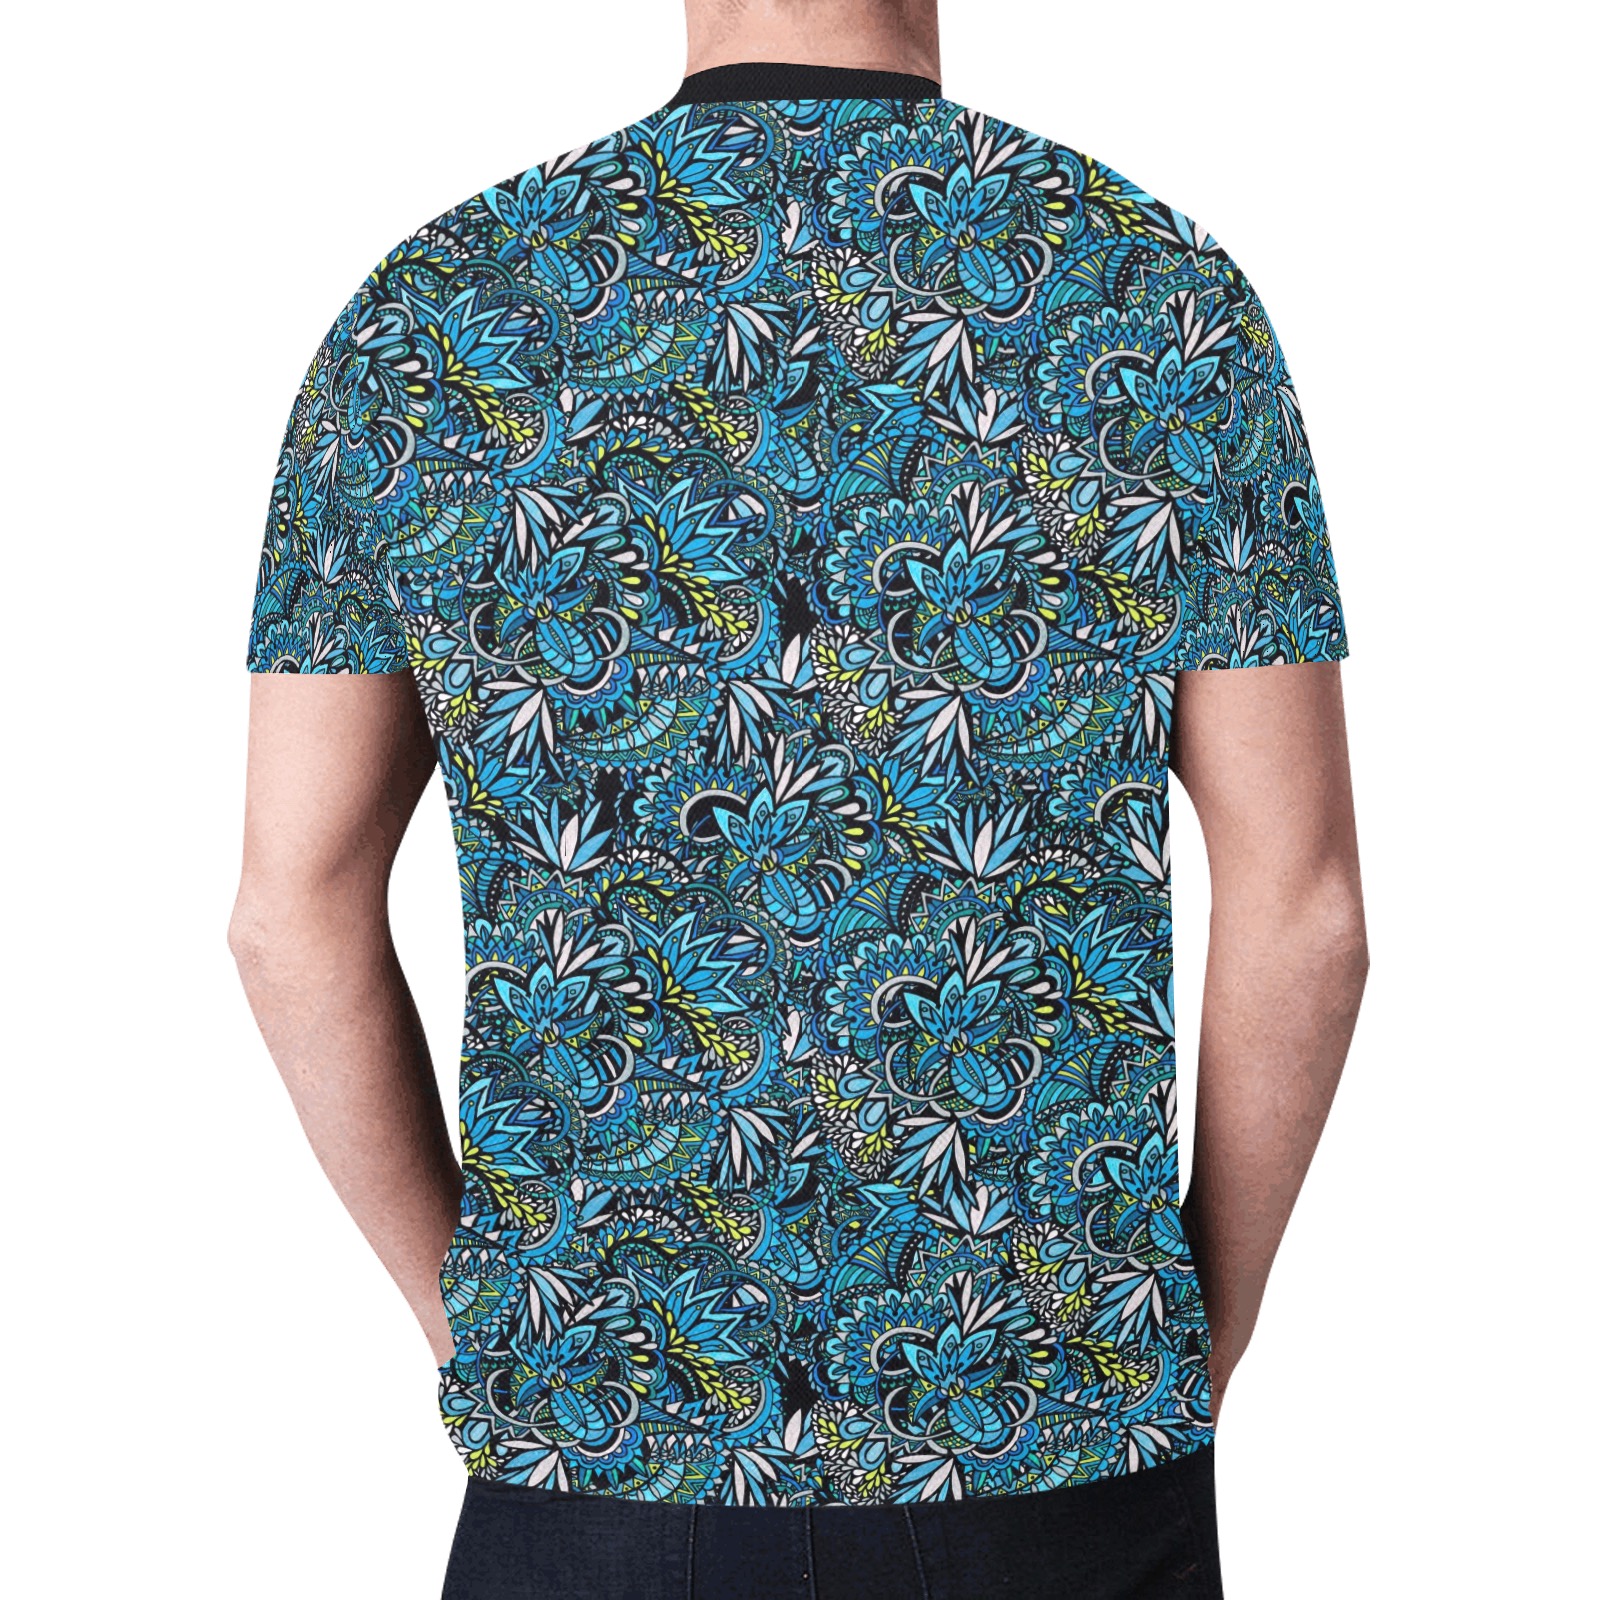 Cerulean Swirls New All Over Print T-shirt for Men (Model T45)